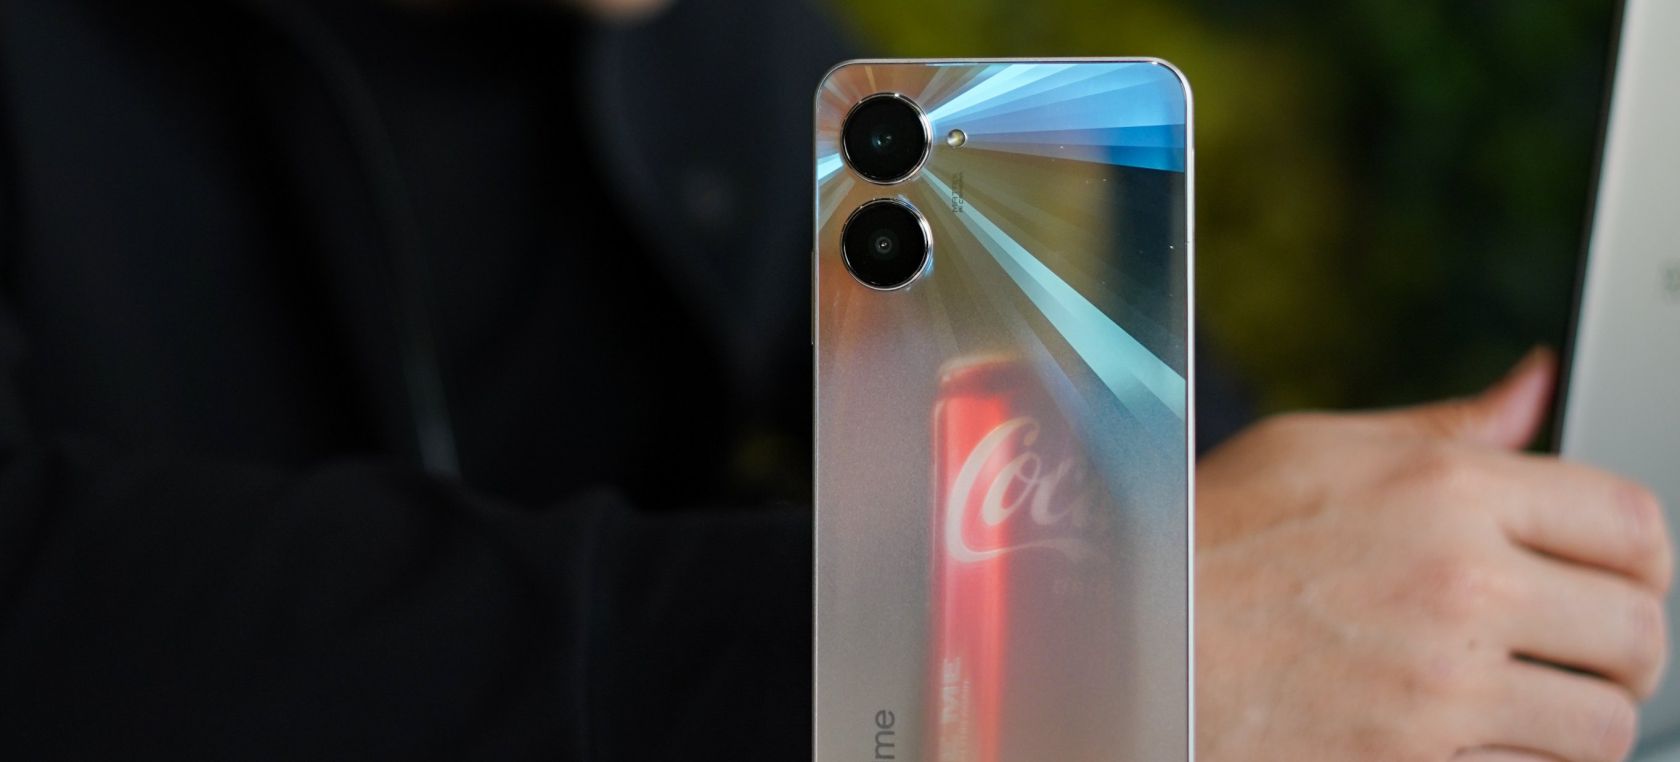 Coca-Cola prepara una colaboración sorpresa para un smartphone